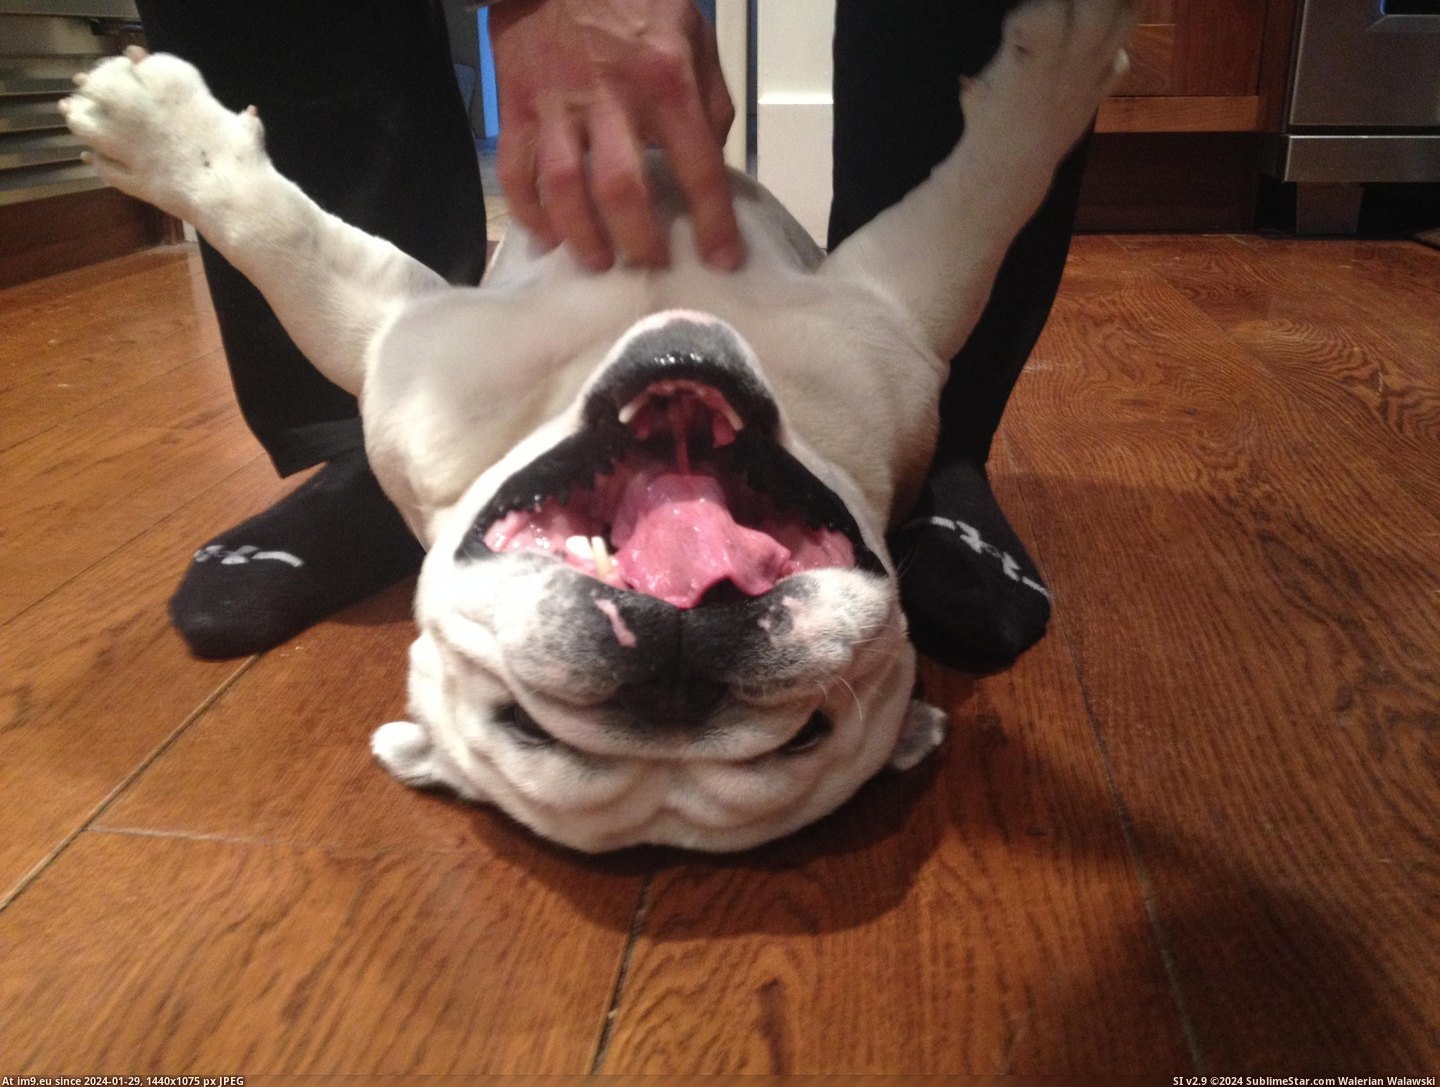 #Loves #Buddy #Scratches #Wendell #Belly #Bulldog [Aww] My buddy's bulldog Wendell LOVES belly scratches Pic. (Bild von album My r/AWW favs))